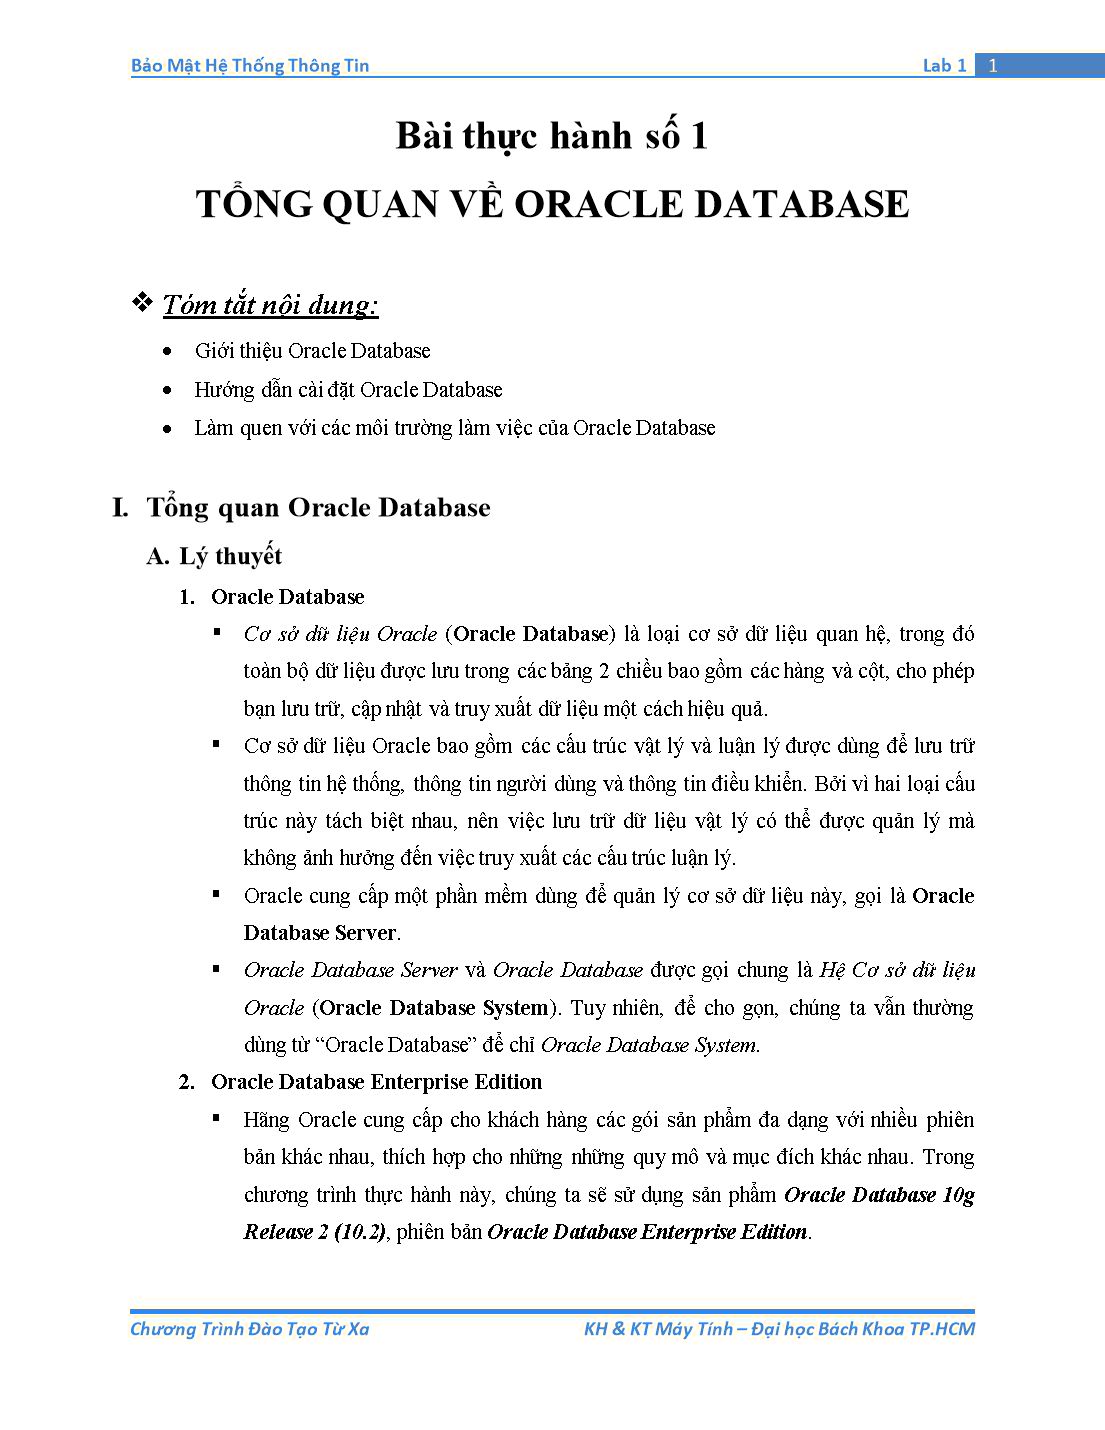 Tài liệu thực hành Bảo mật hệ thống thông tin - Bài thực hành số 1: Tổng quan về Oracle Database trang 1